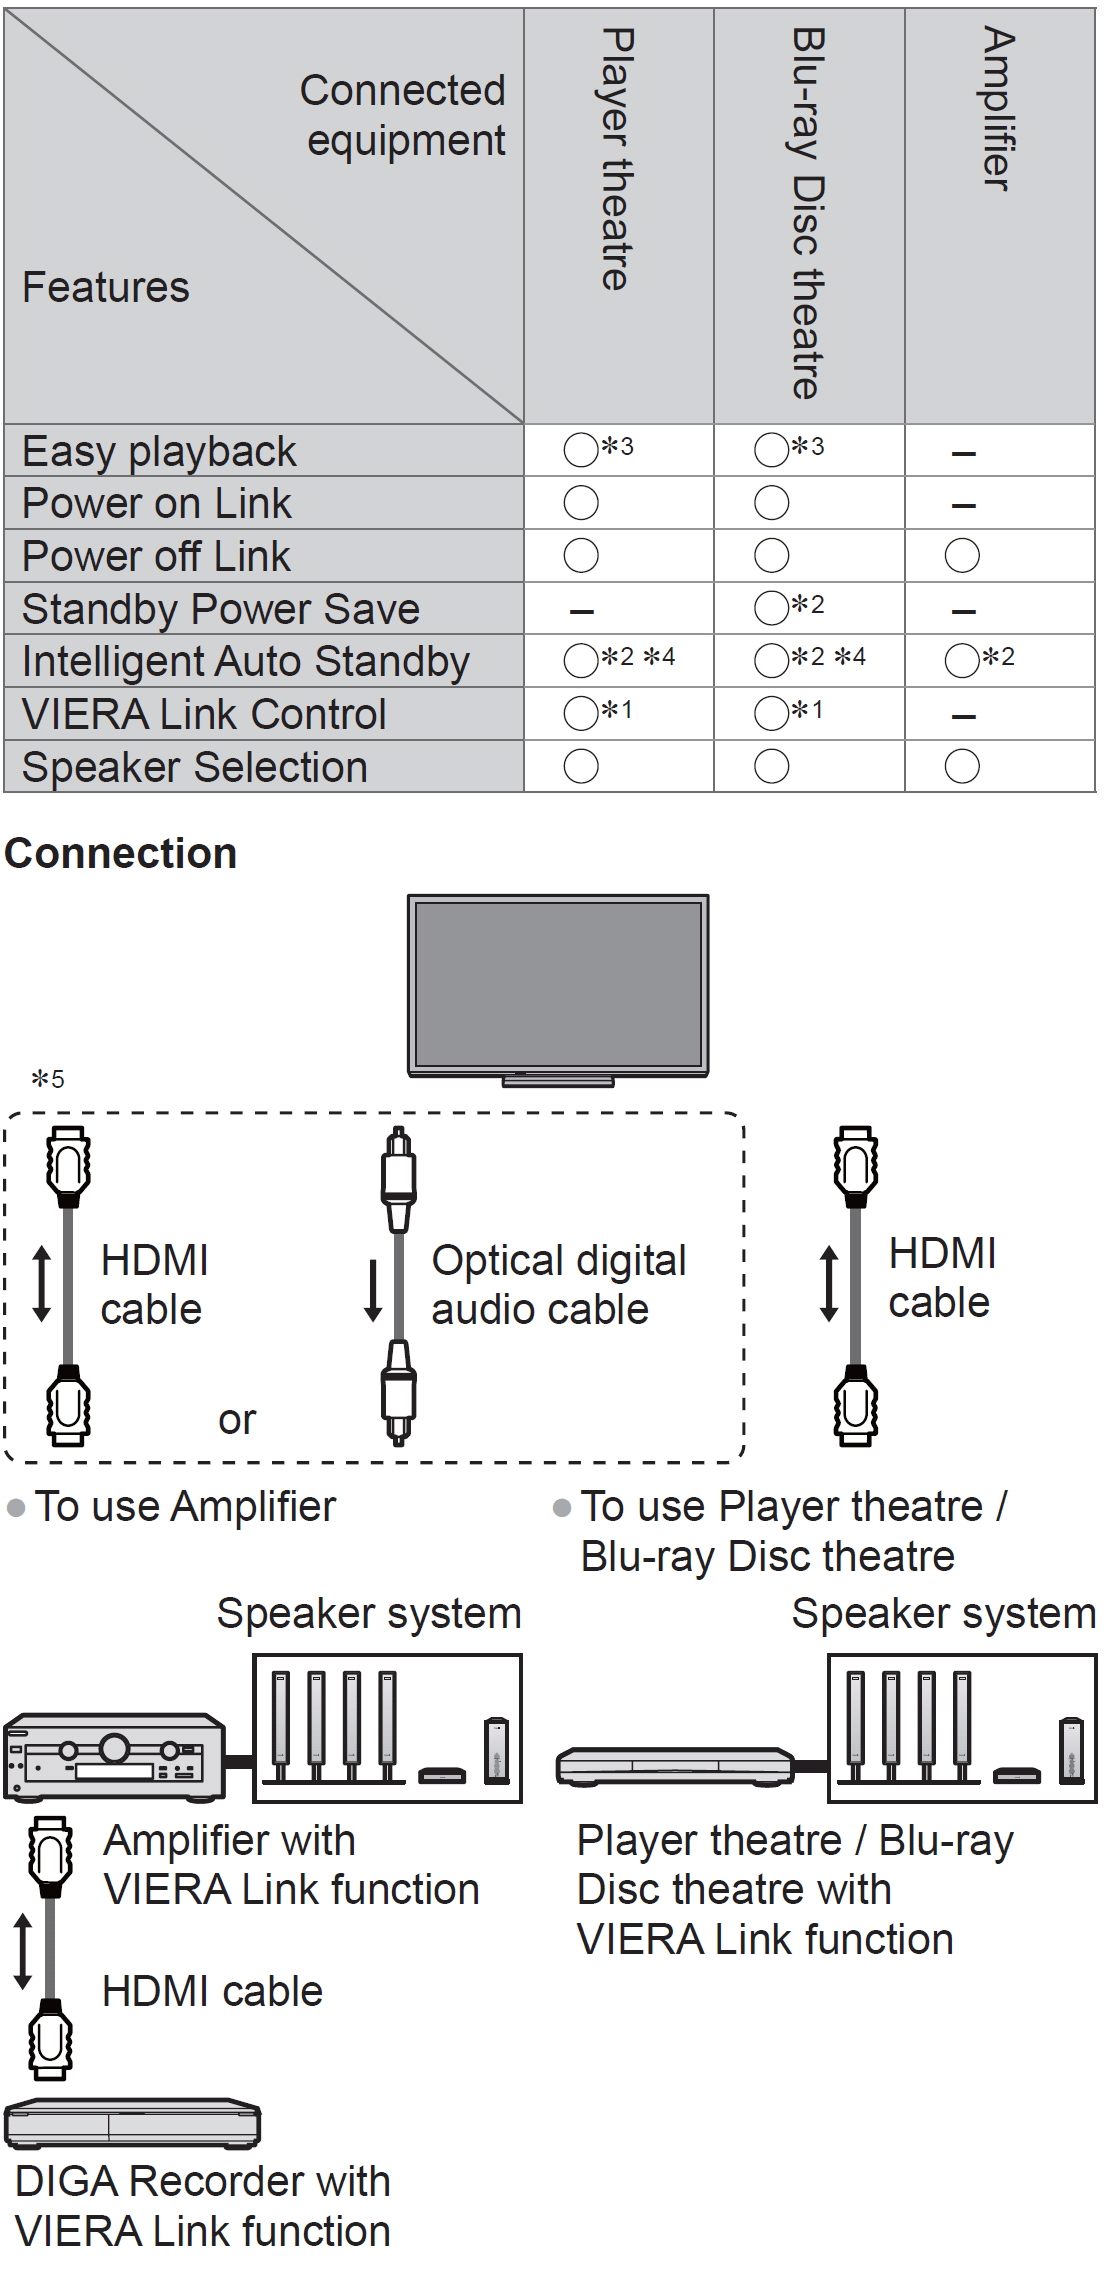 תכונת VIERA Link חיבור :HDMI and Audi out תכונה זו מאפשרת חיבור ושליטה של מכשירים נוספים הנתמכים גם הם על ידי התכונה והמאפשרים פעולה מול שלט רחוק מסדרת ה-.